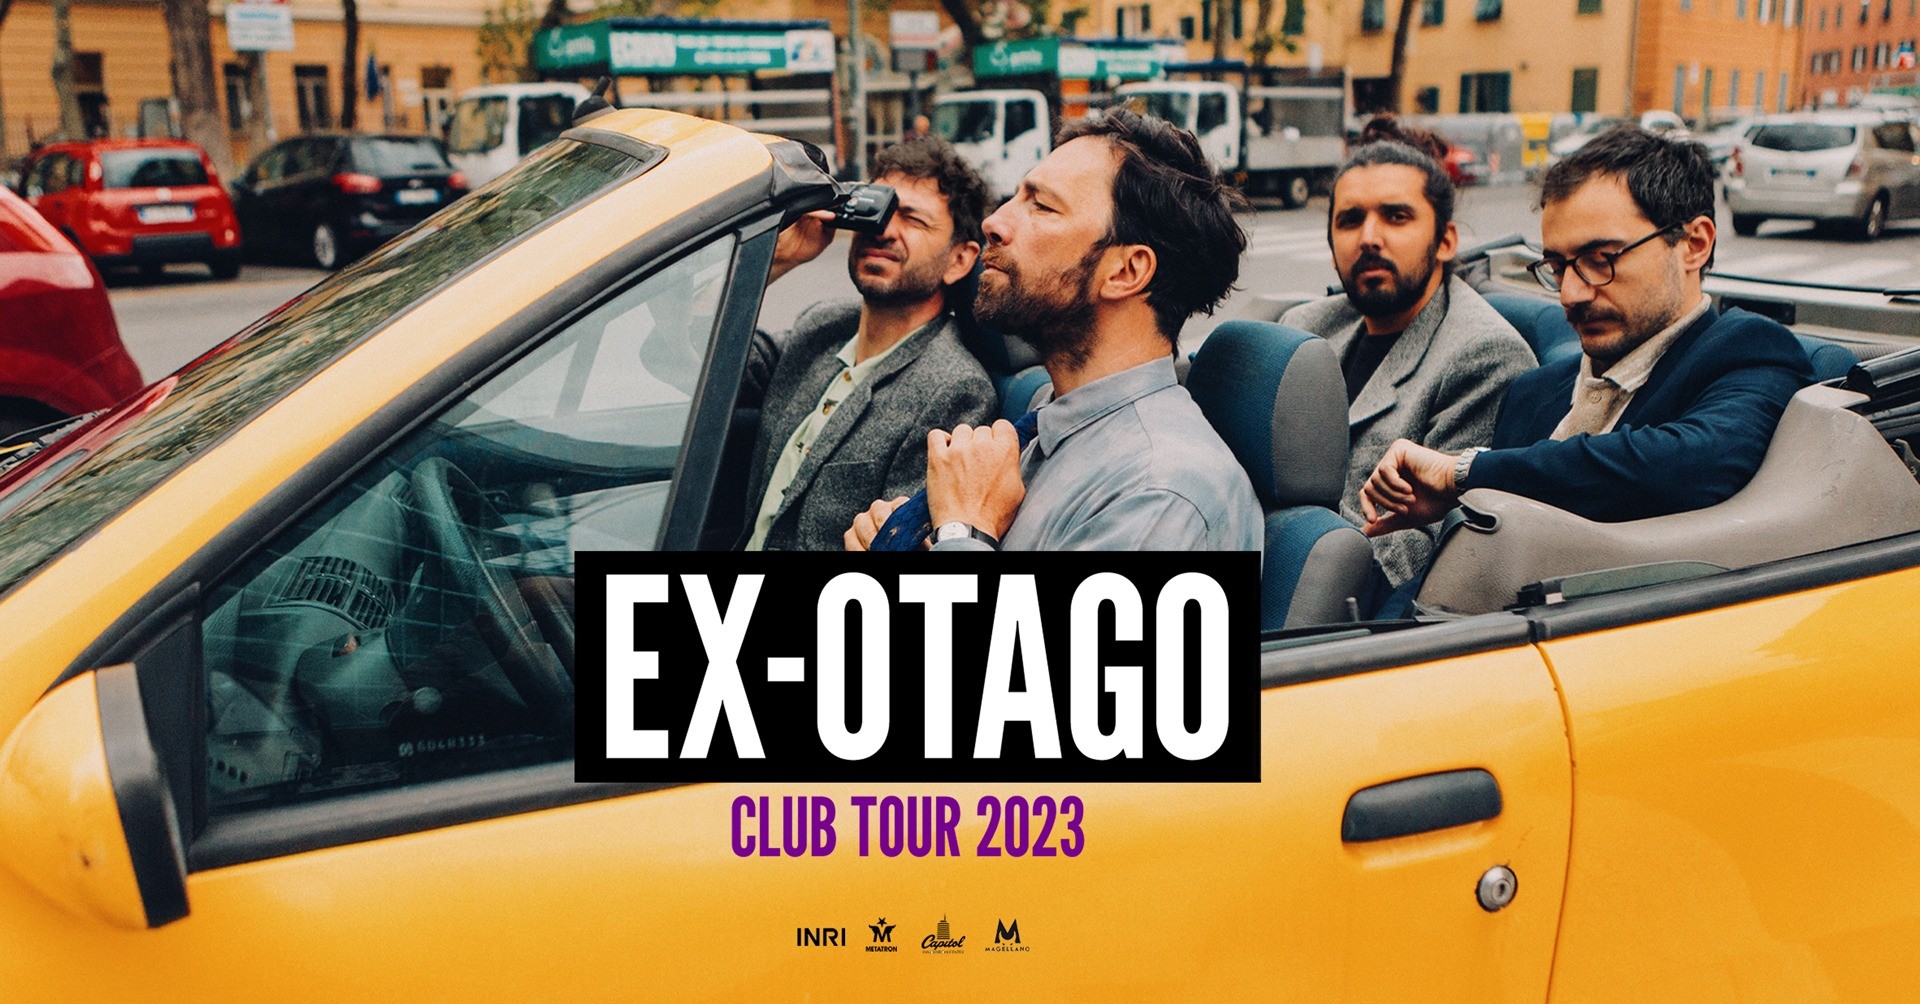 image EX-OTAGO - CLUB TOUR 2023